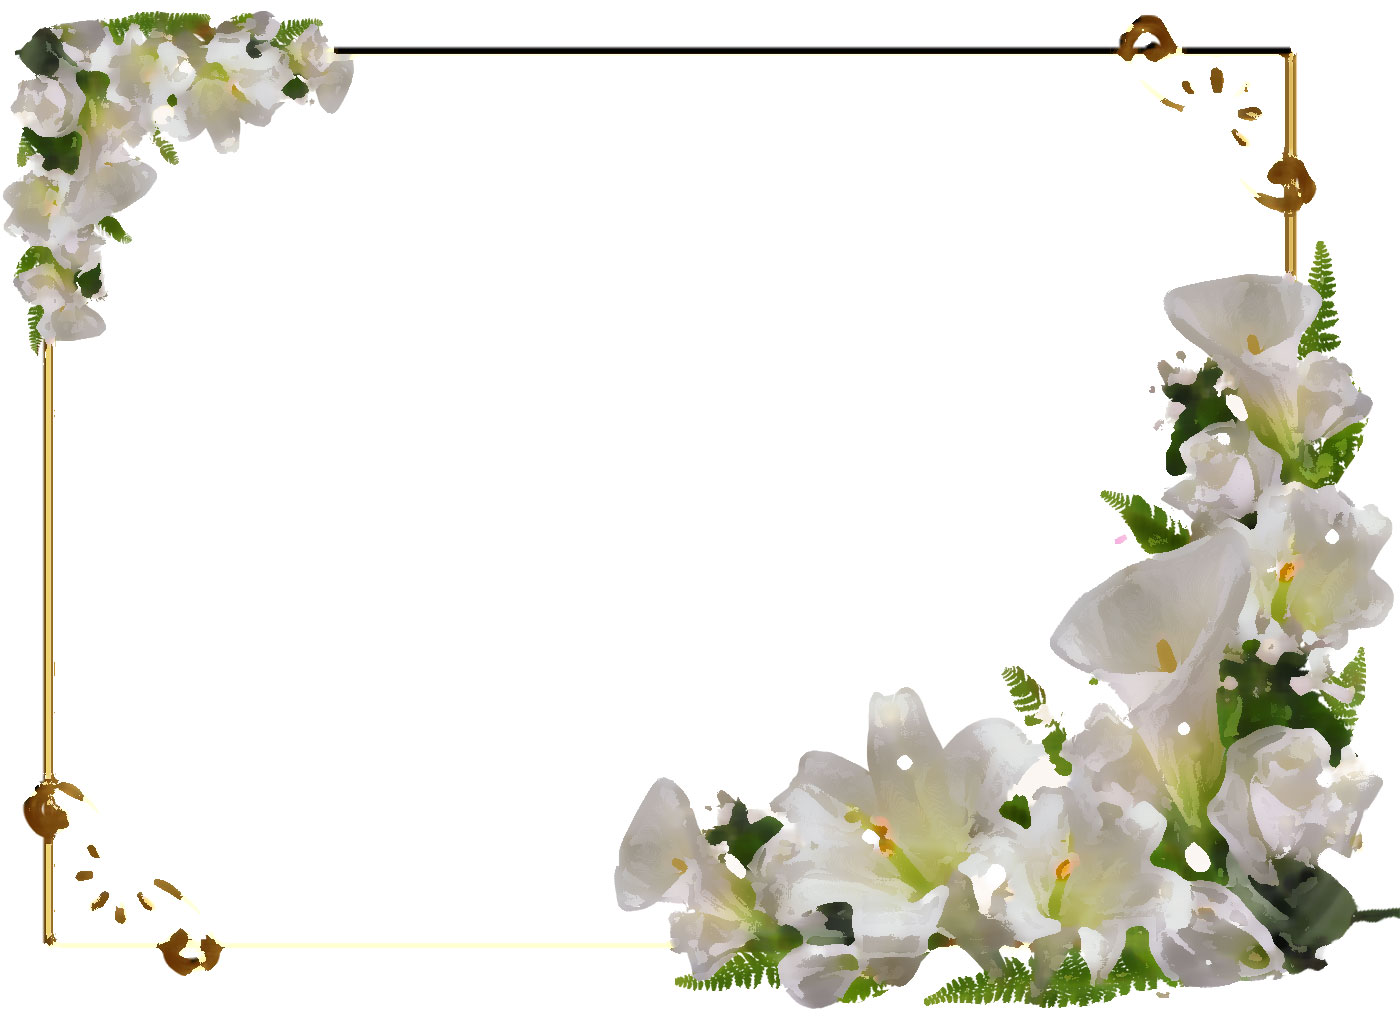 白い花のイラスト フリー素材 No 235 白ユリ コーナー